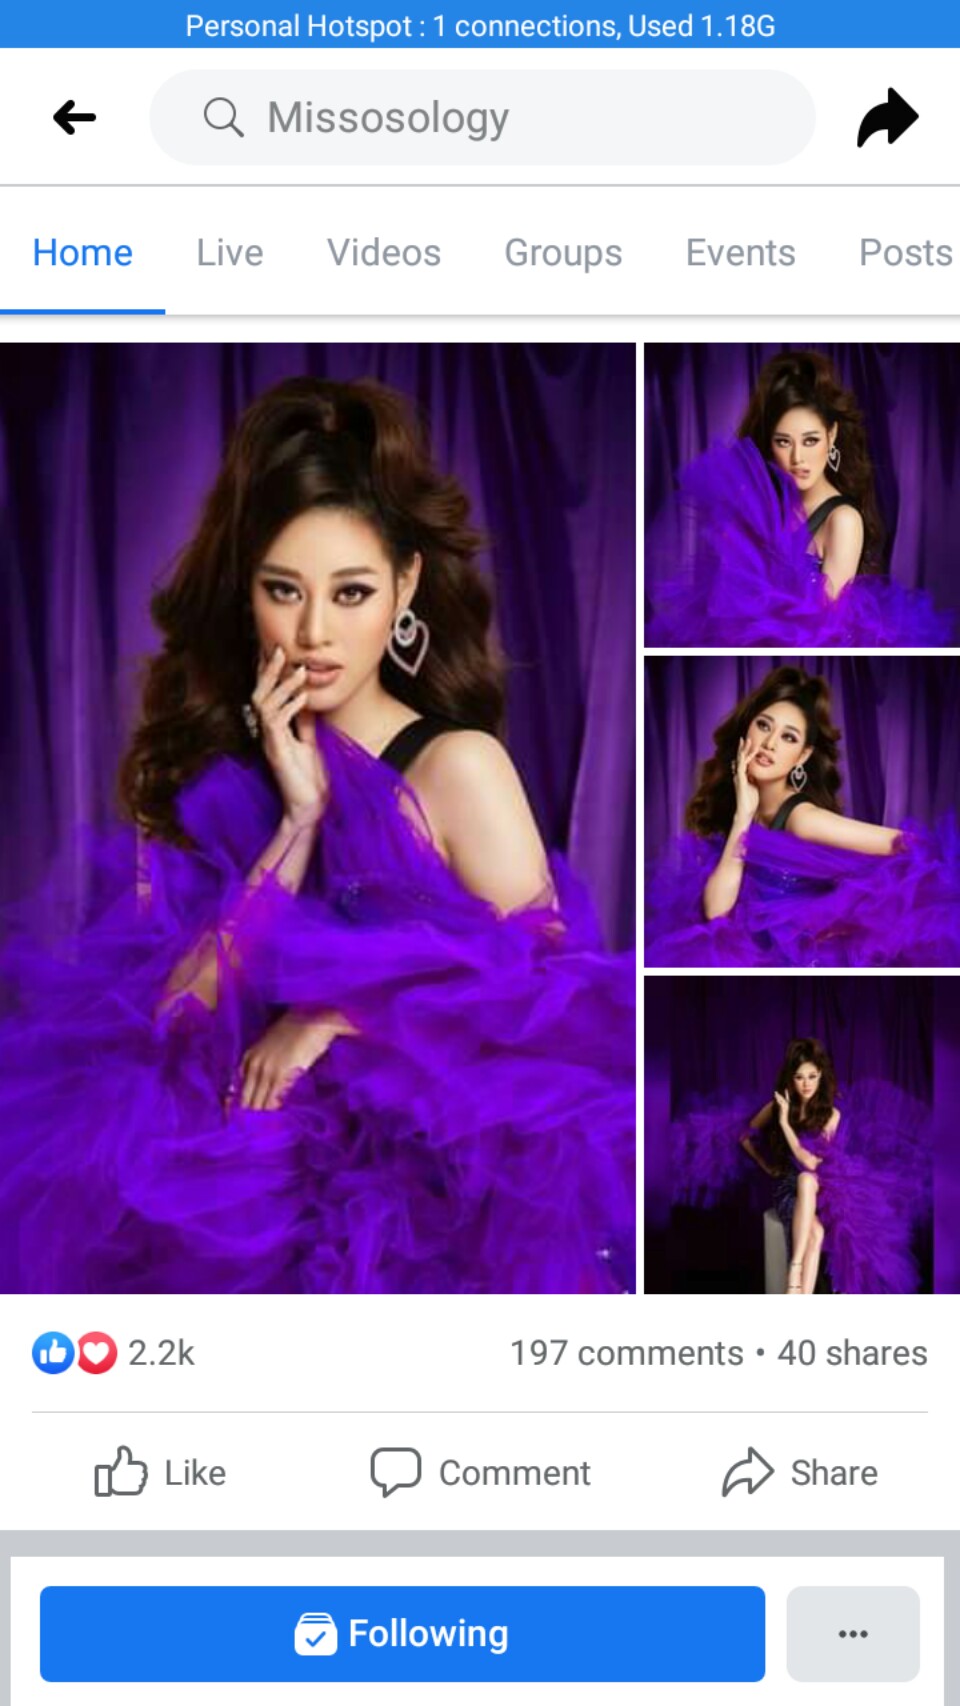 Hoa hậu Khánh Vân được fans sắc đẹp quốc tế khen ngợi - Ảnh 1